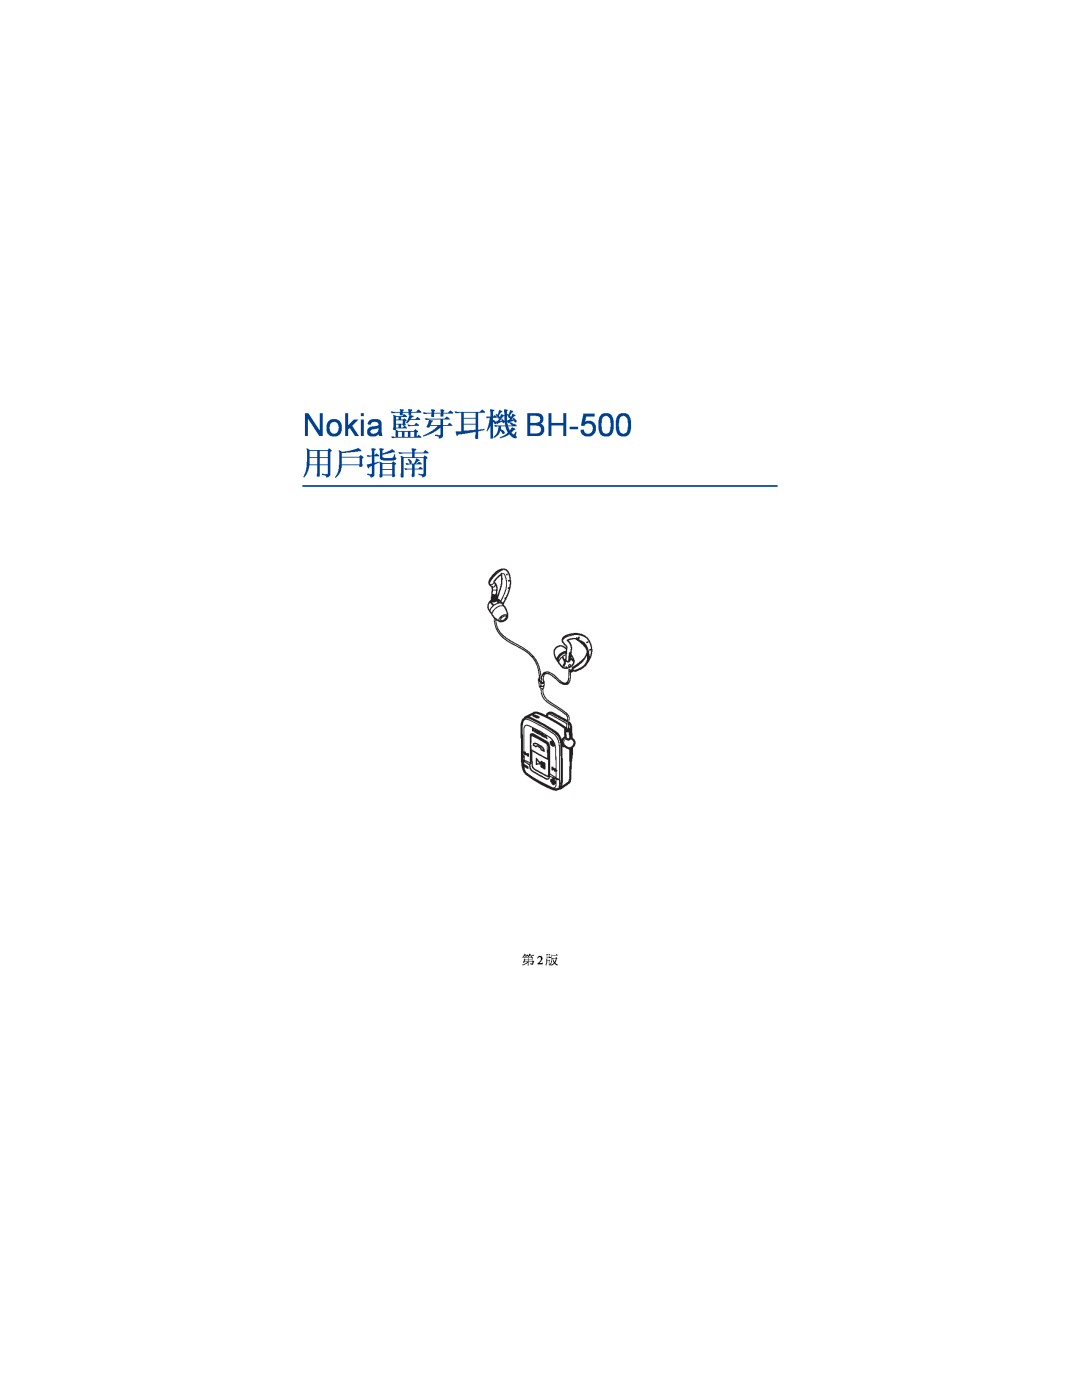 Nokia manual Nokia 藍芽耳機 BH-500, 用戶指南, 第 2 版 